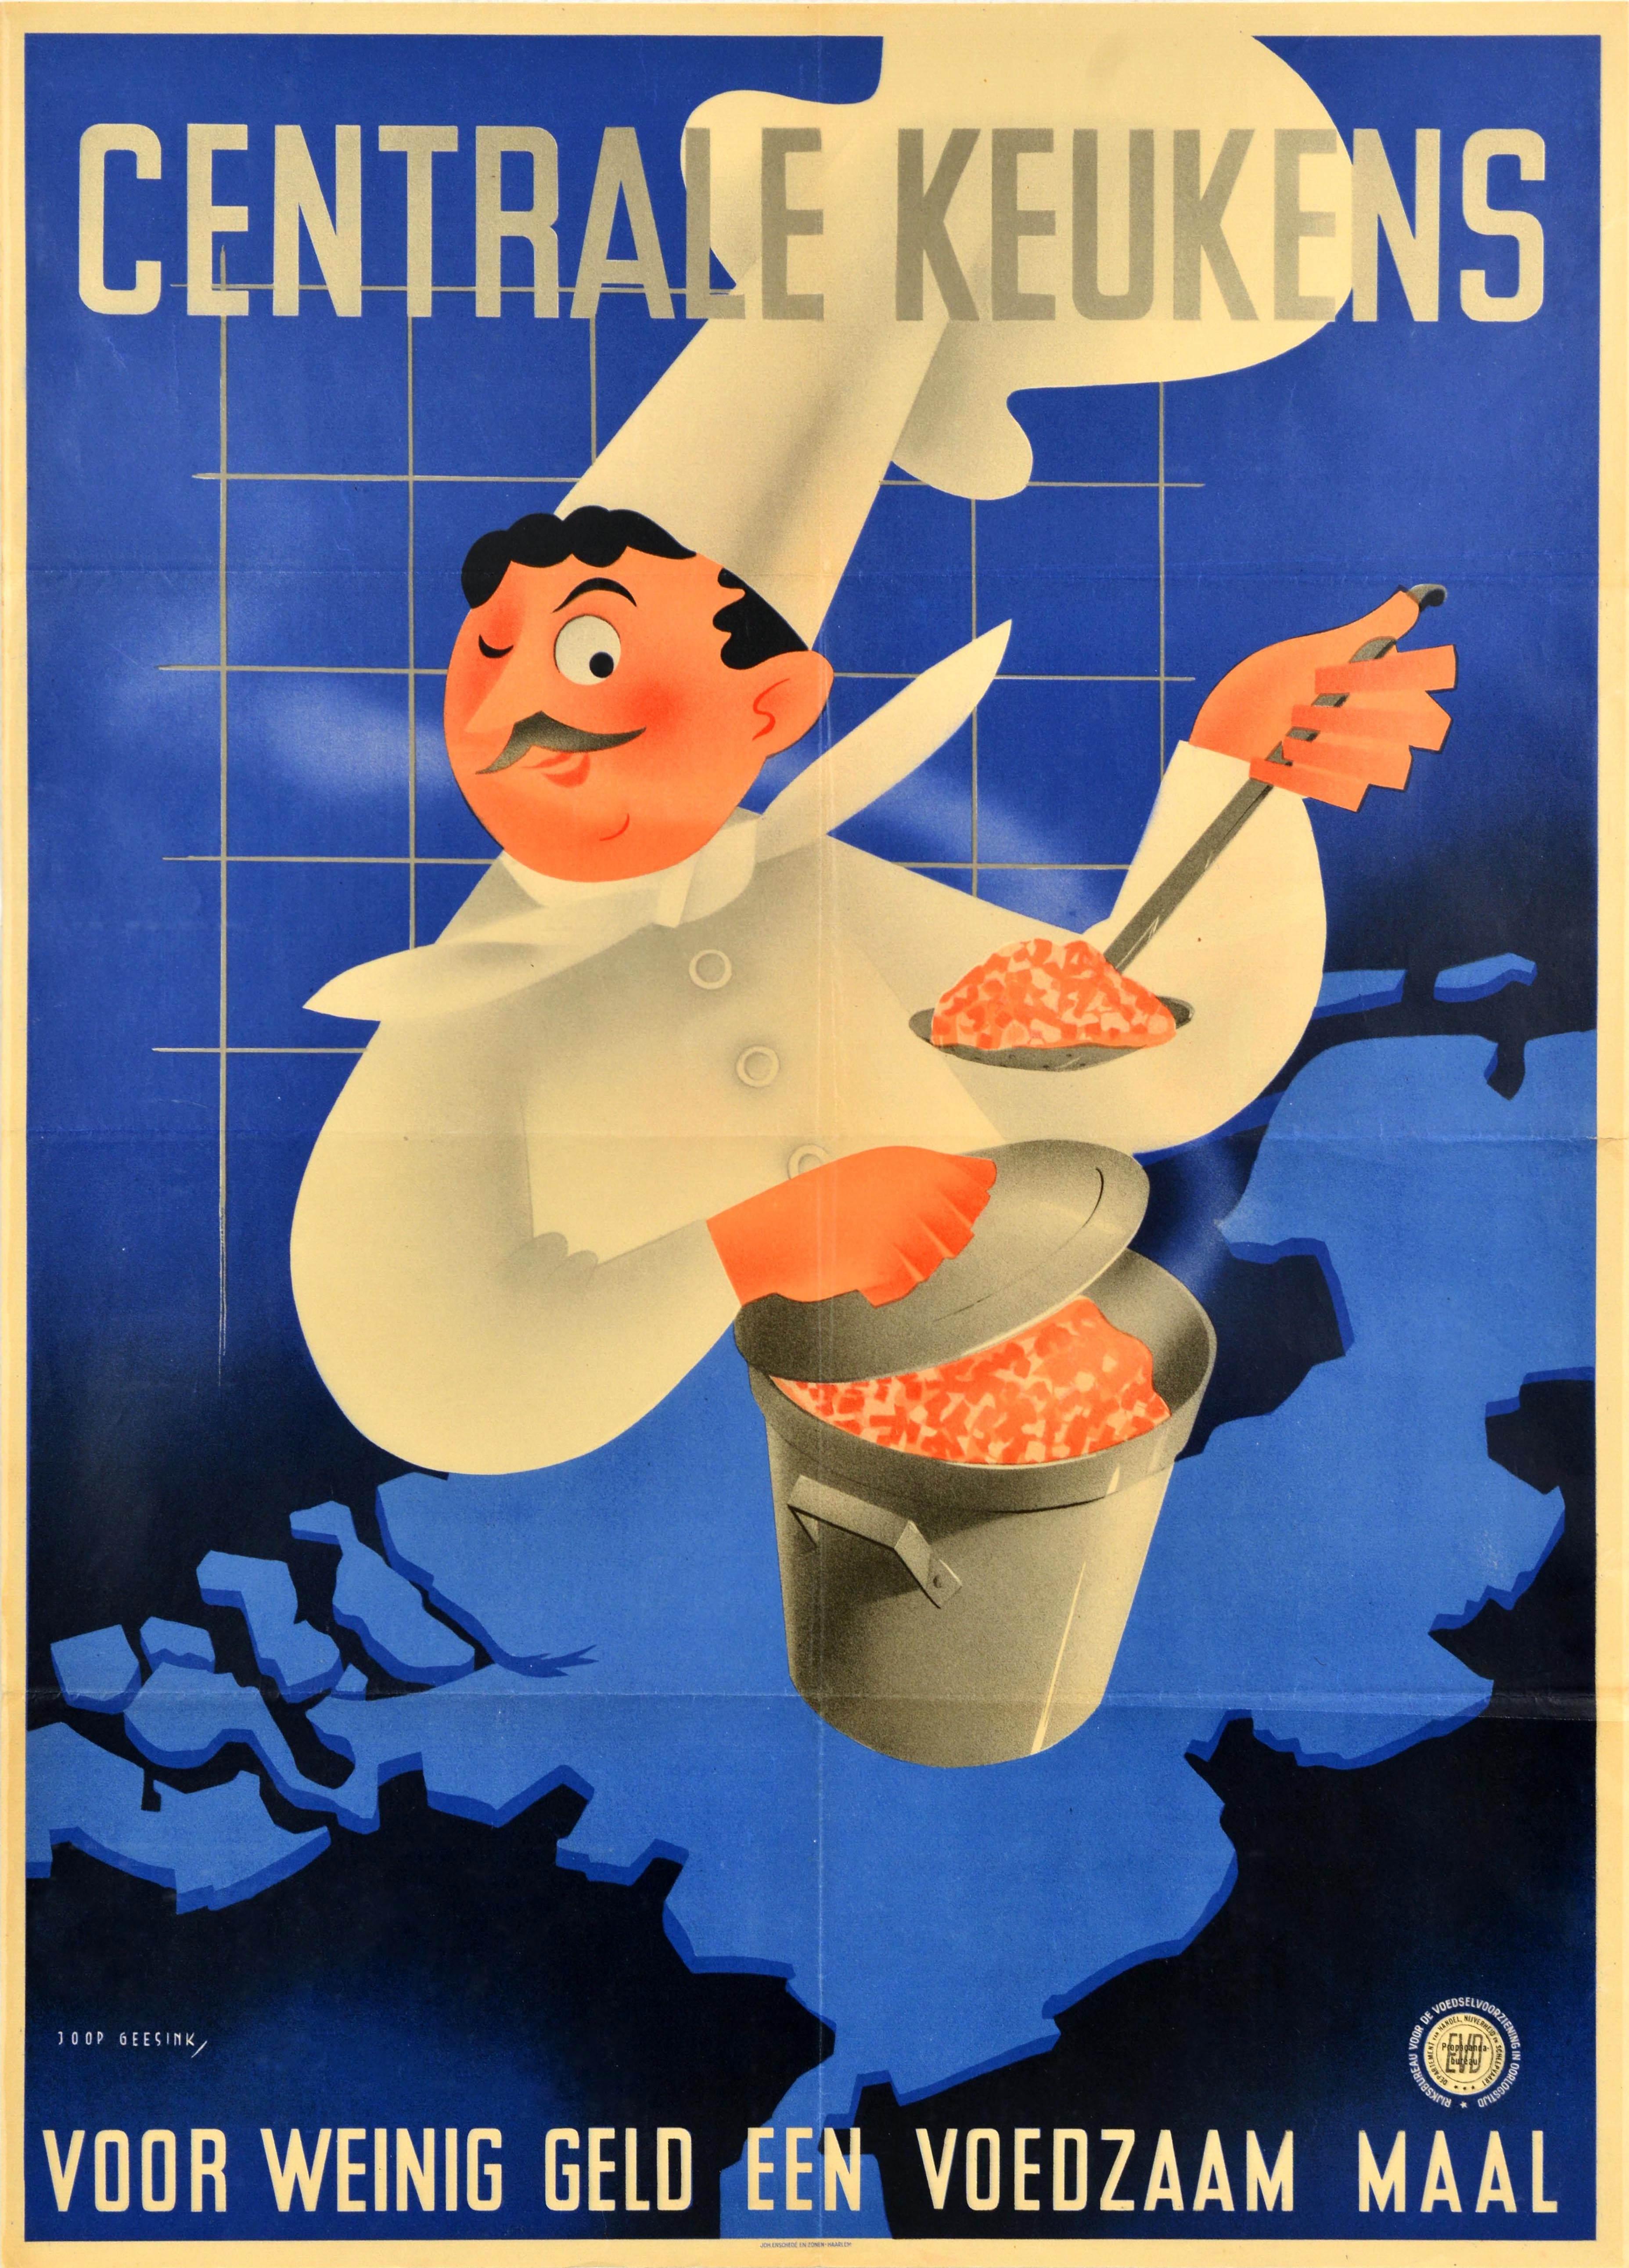 Joop Geesink Print – Original Vintage-Poster aus dem Zweiten Weltkrieg, Central Kitchens, Kriegs Food Centrale, Keukens, Karte, Chef